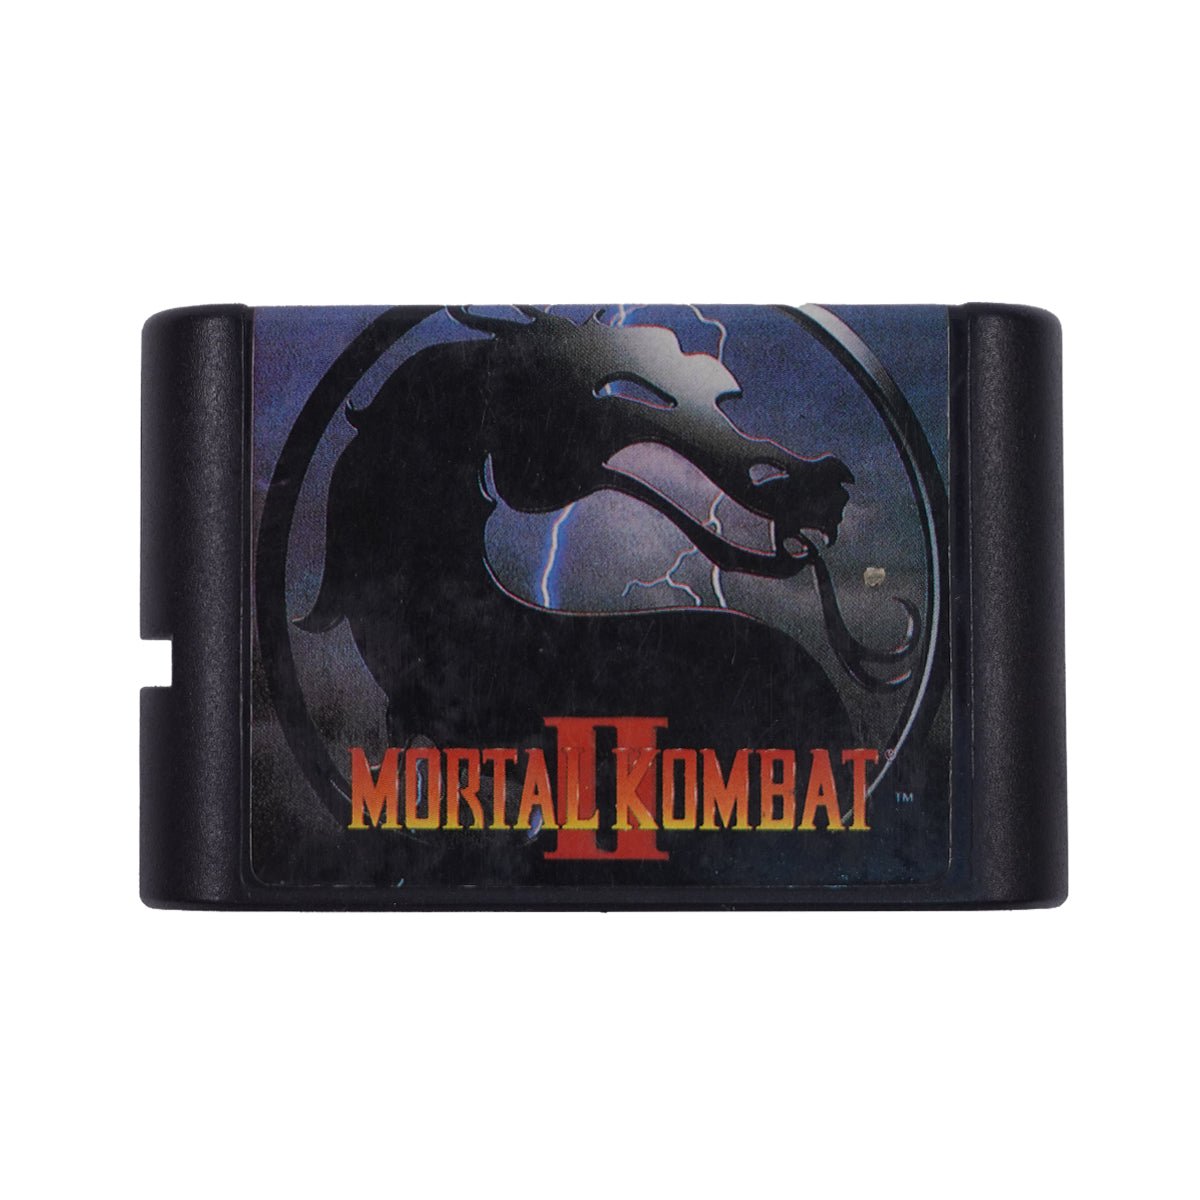 (Pre-Owned) Mortal Kombat II - Sega - Store 974 | ستور ٩٧٤